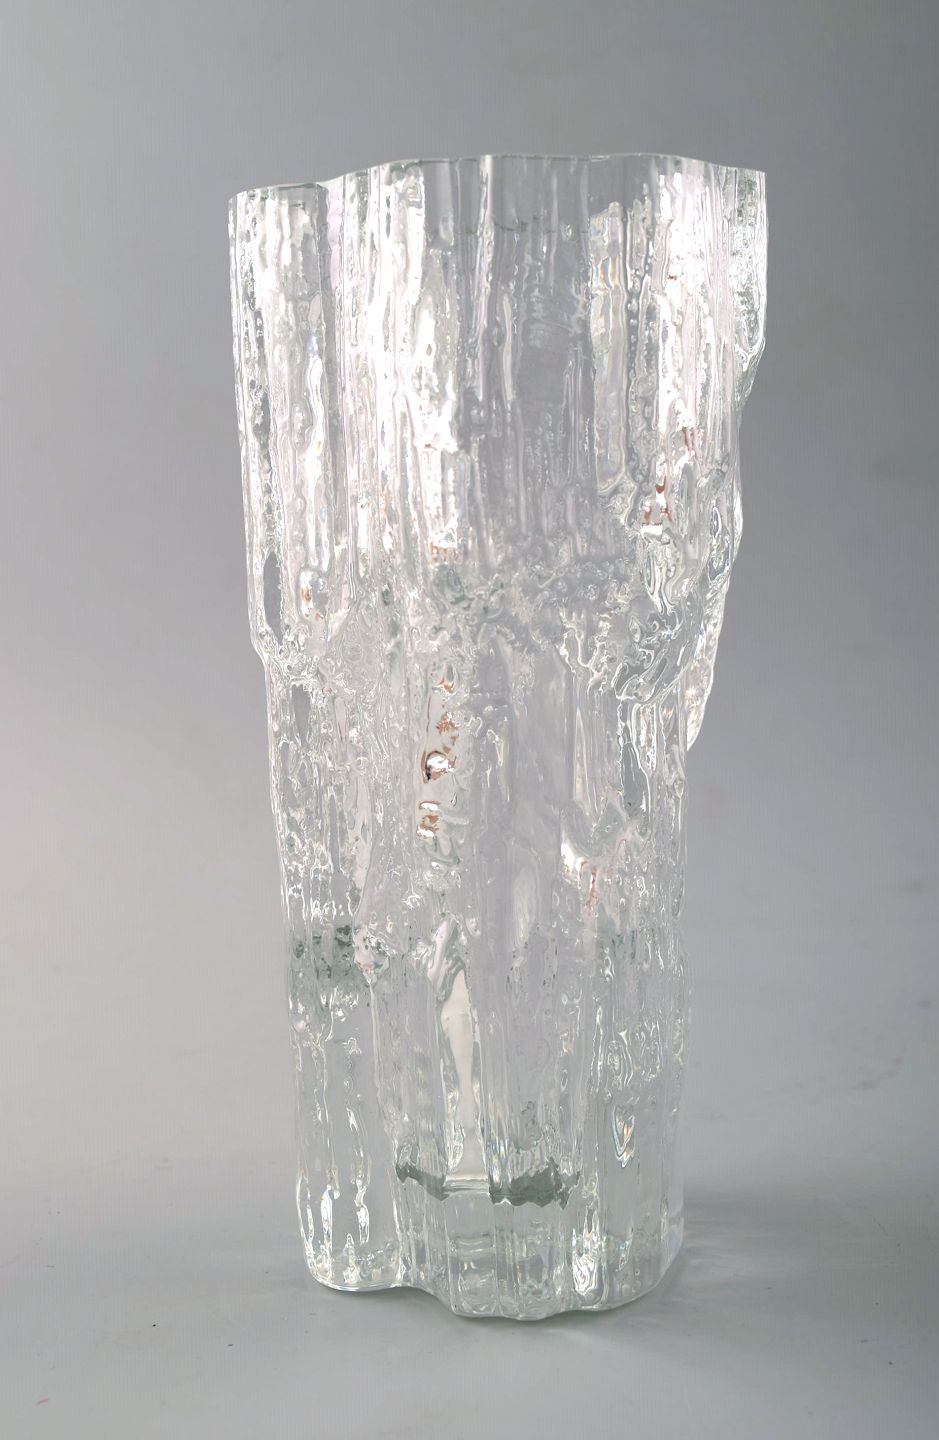  - Iittala, Tapio Wirkkala glass vase. Model Number 3429.